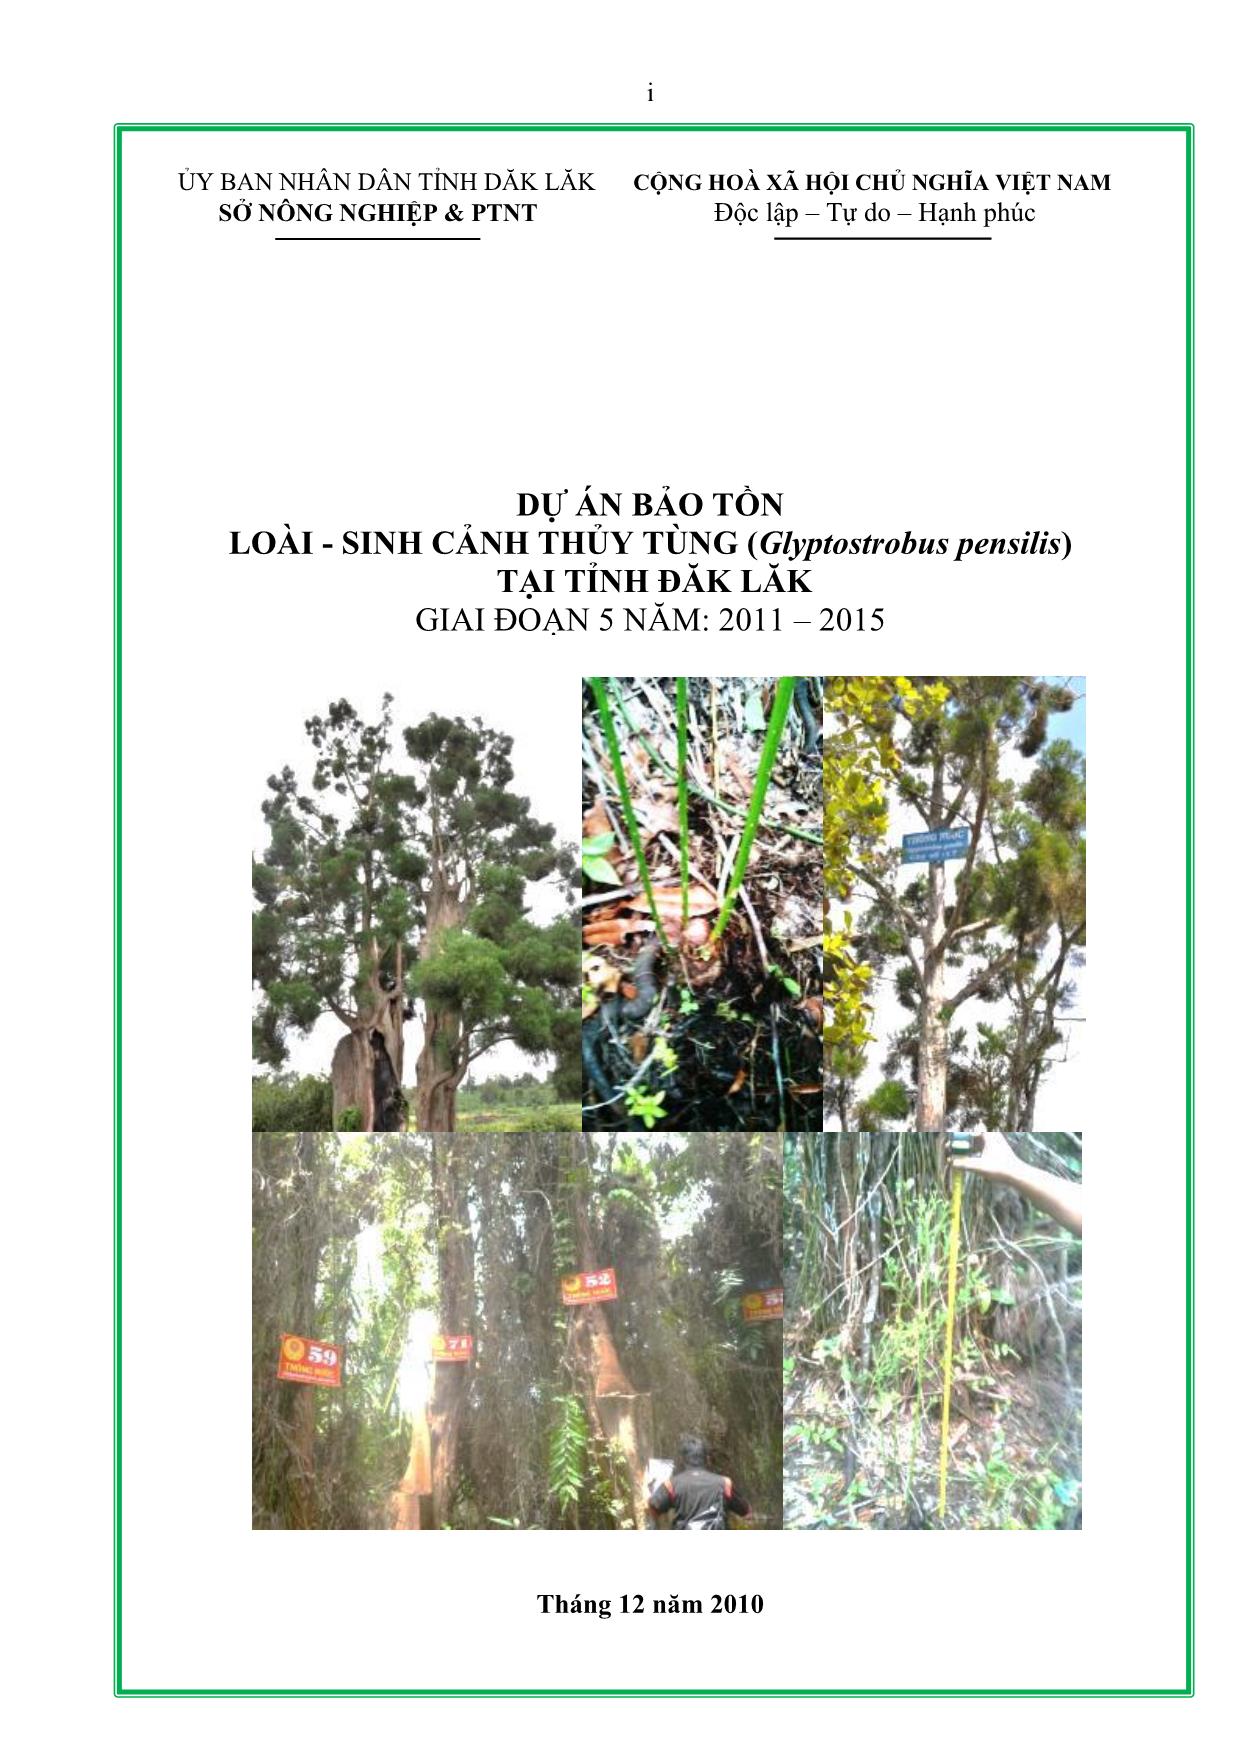 Dự án Bảo tồn loài & sinh cảnh thủy tùng (Glyptostrobus pensilis) tại tỉnh Đăk Lăk - Giai đoạn 5 (Năm 2011-2015) trang 1